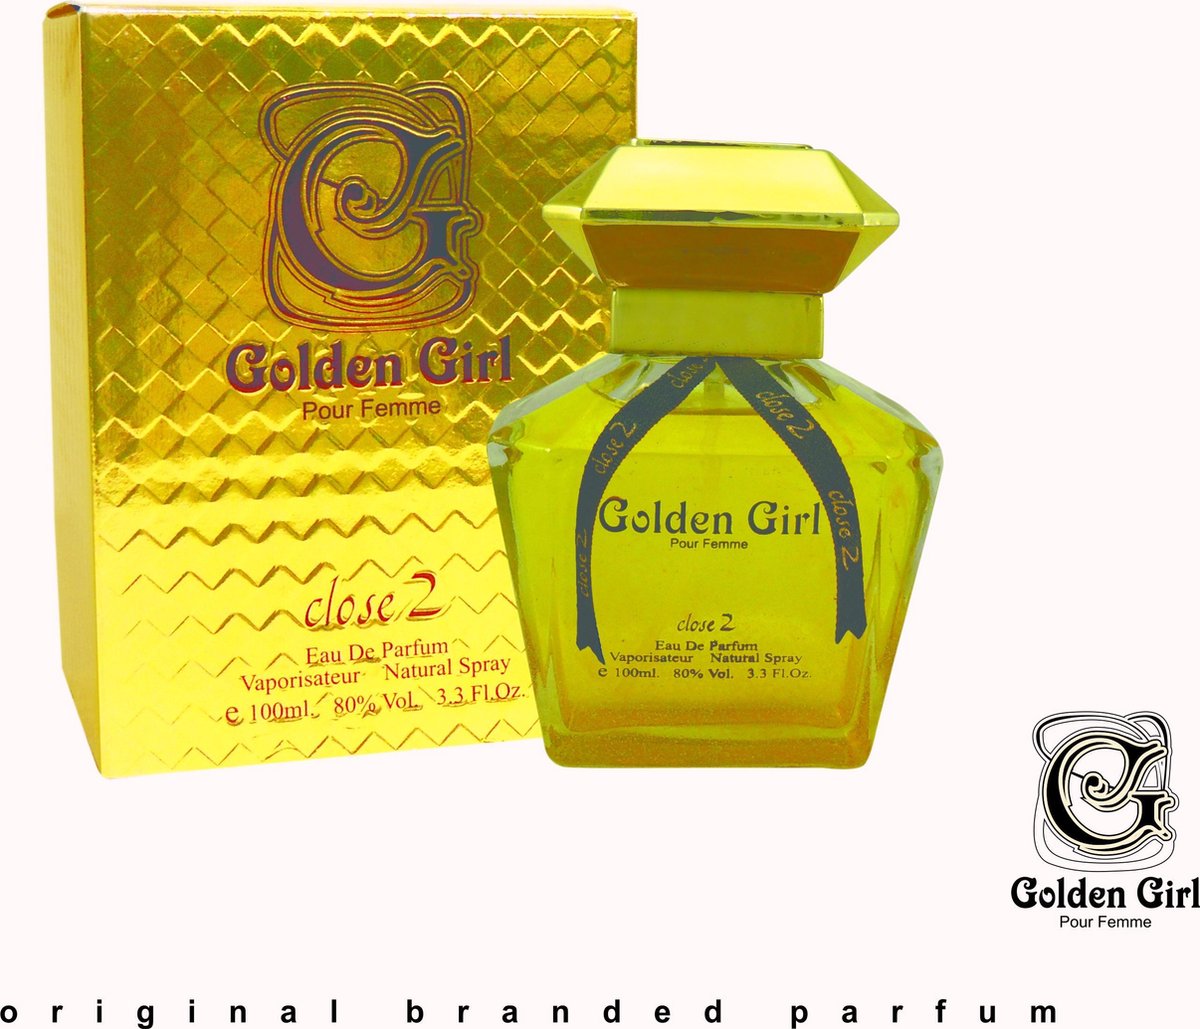 Golden Girl - Eau de Parfum - 100ml Close2